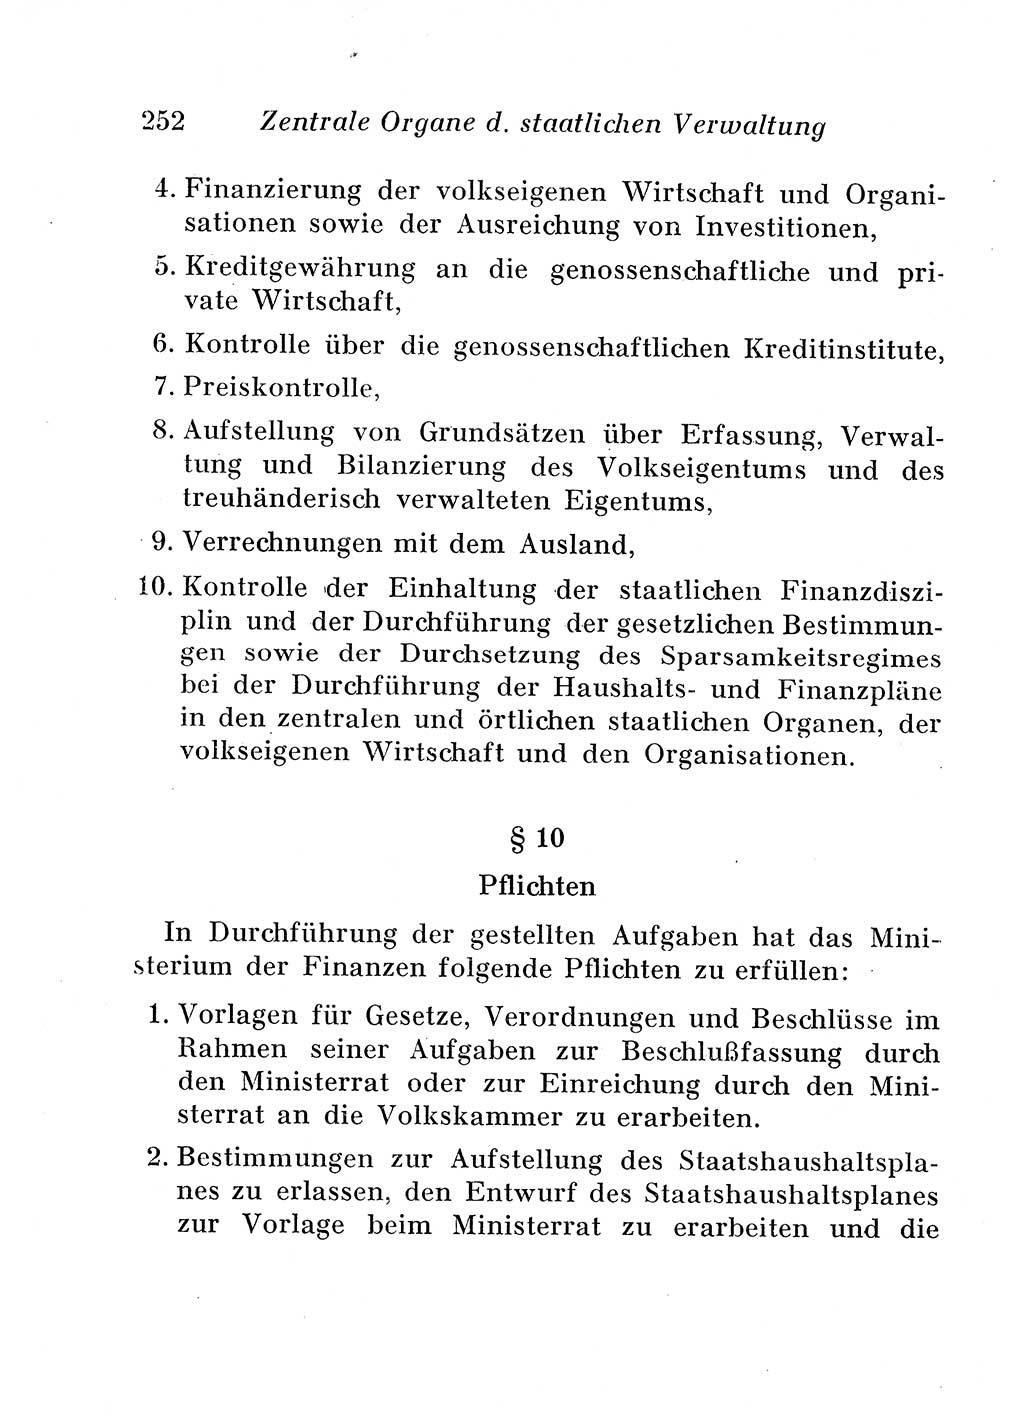 Staats- und verwaltungsrechtliche Gesetze der Deutschen Demokratischen Republik (DDR) 1958, Seite 252 (StVerwR Ges. DDR 1958, S. 252)